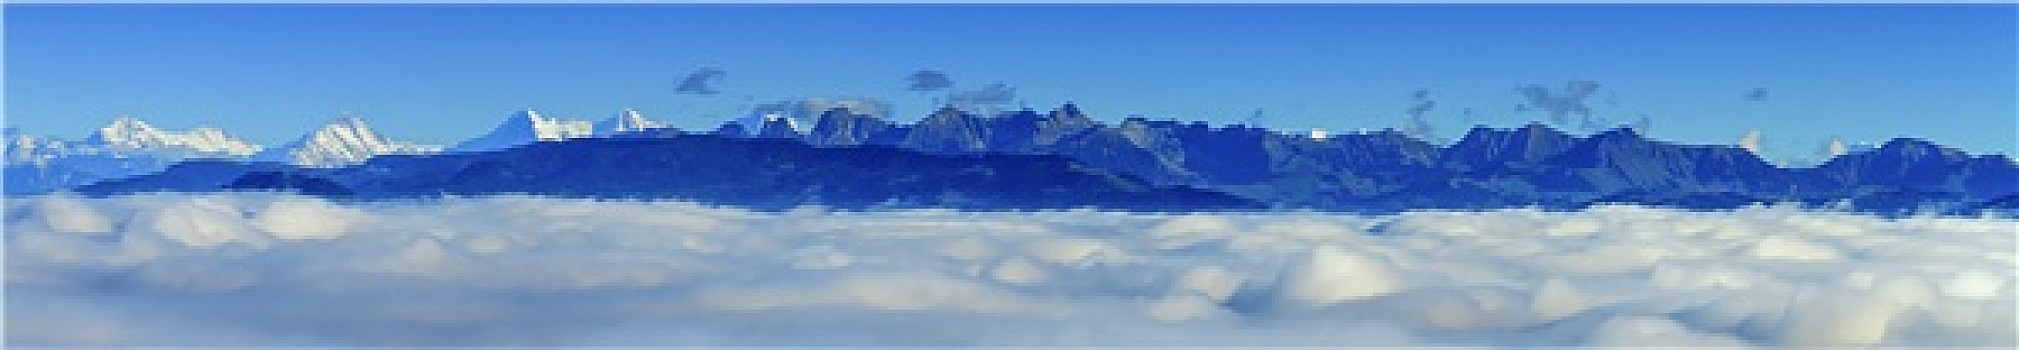 航拍,阿尔卑斯山,山,云,风景,弗里堡,瑞士